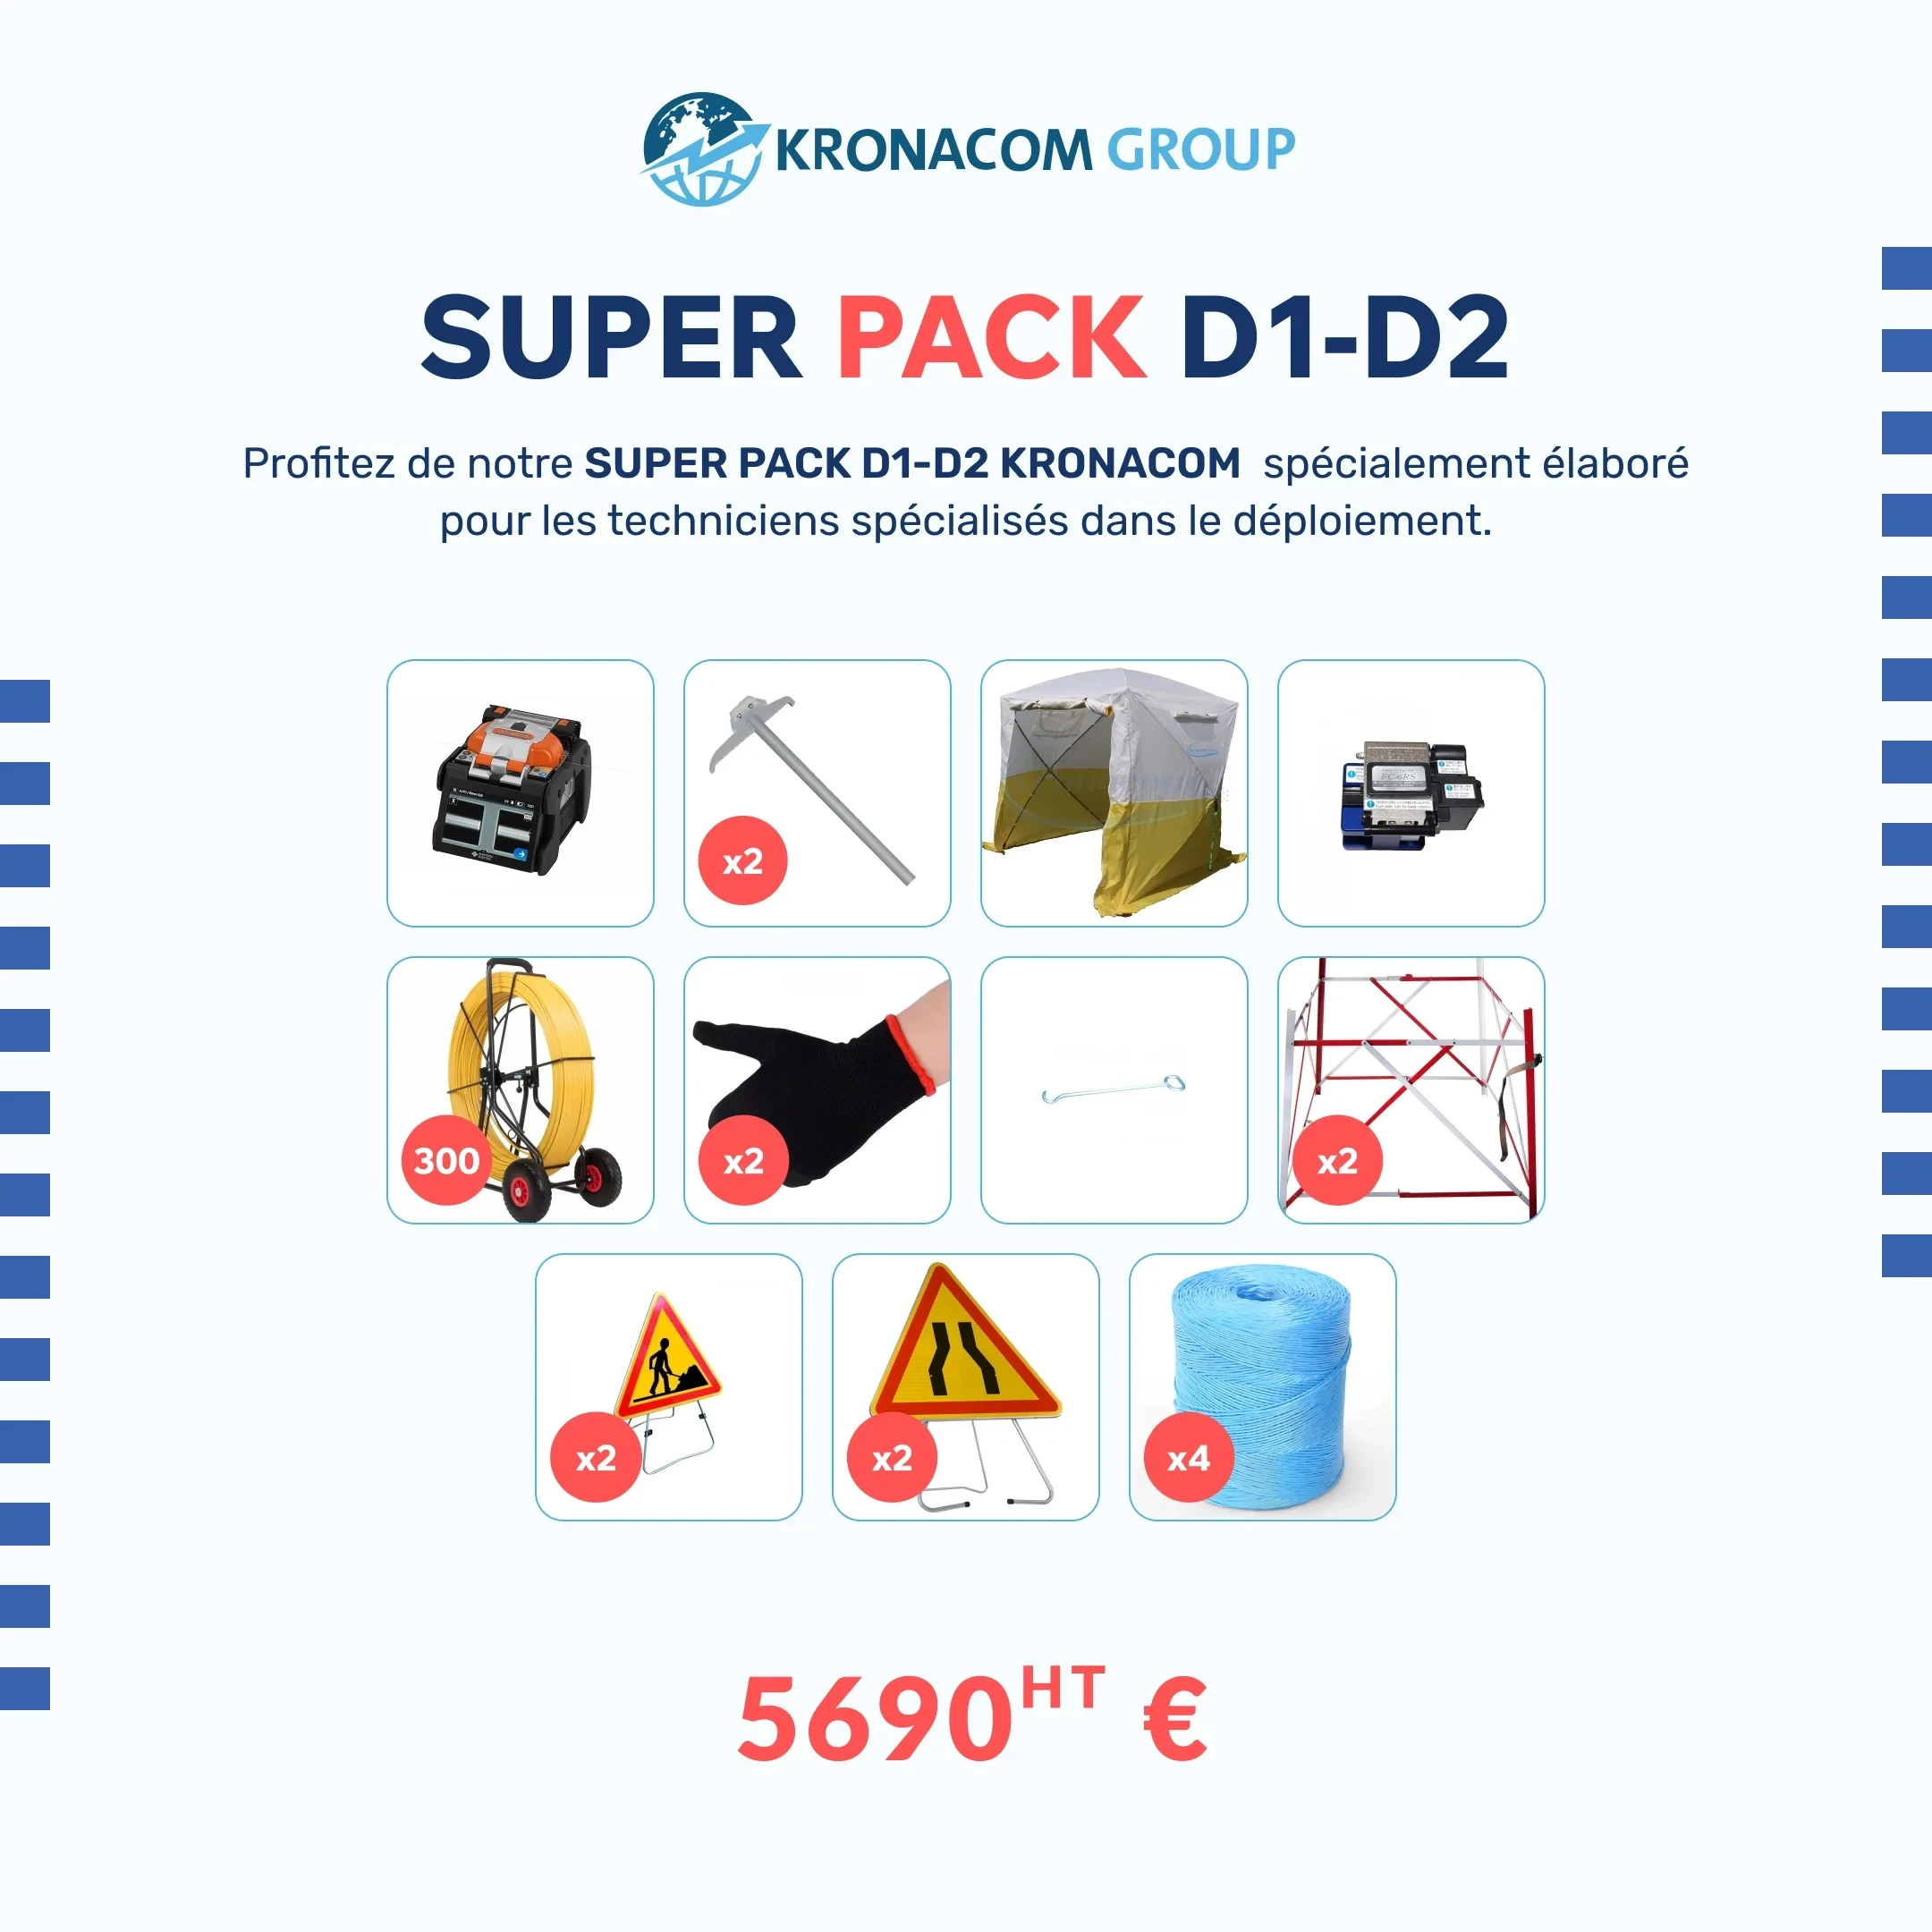 Super Pack D1-D2